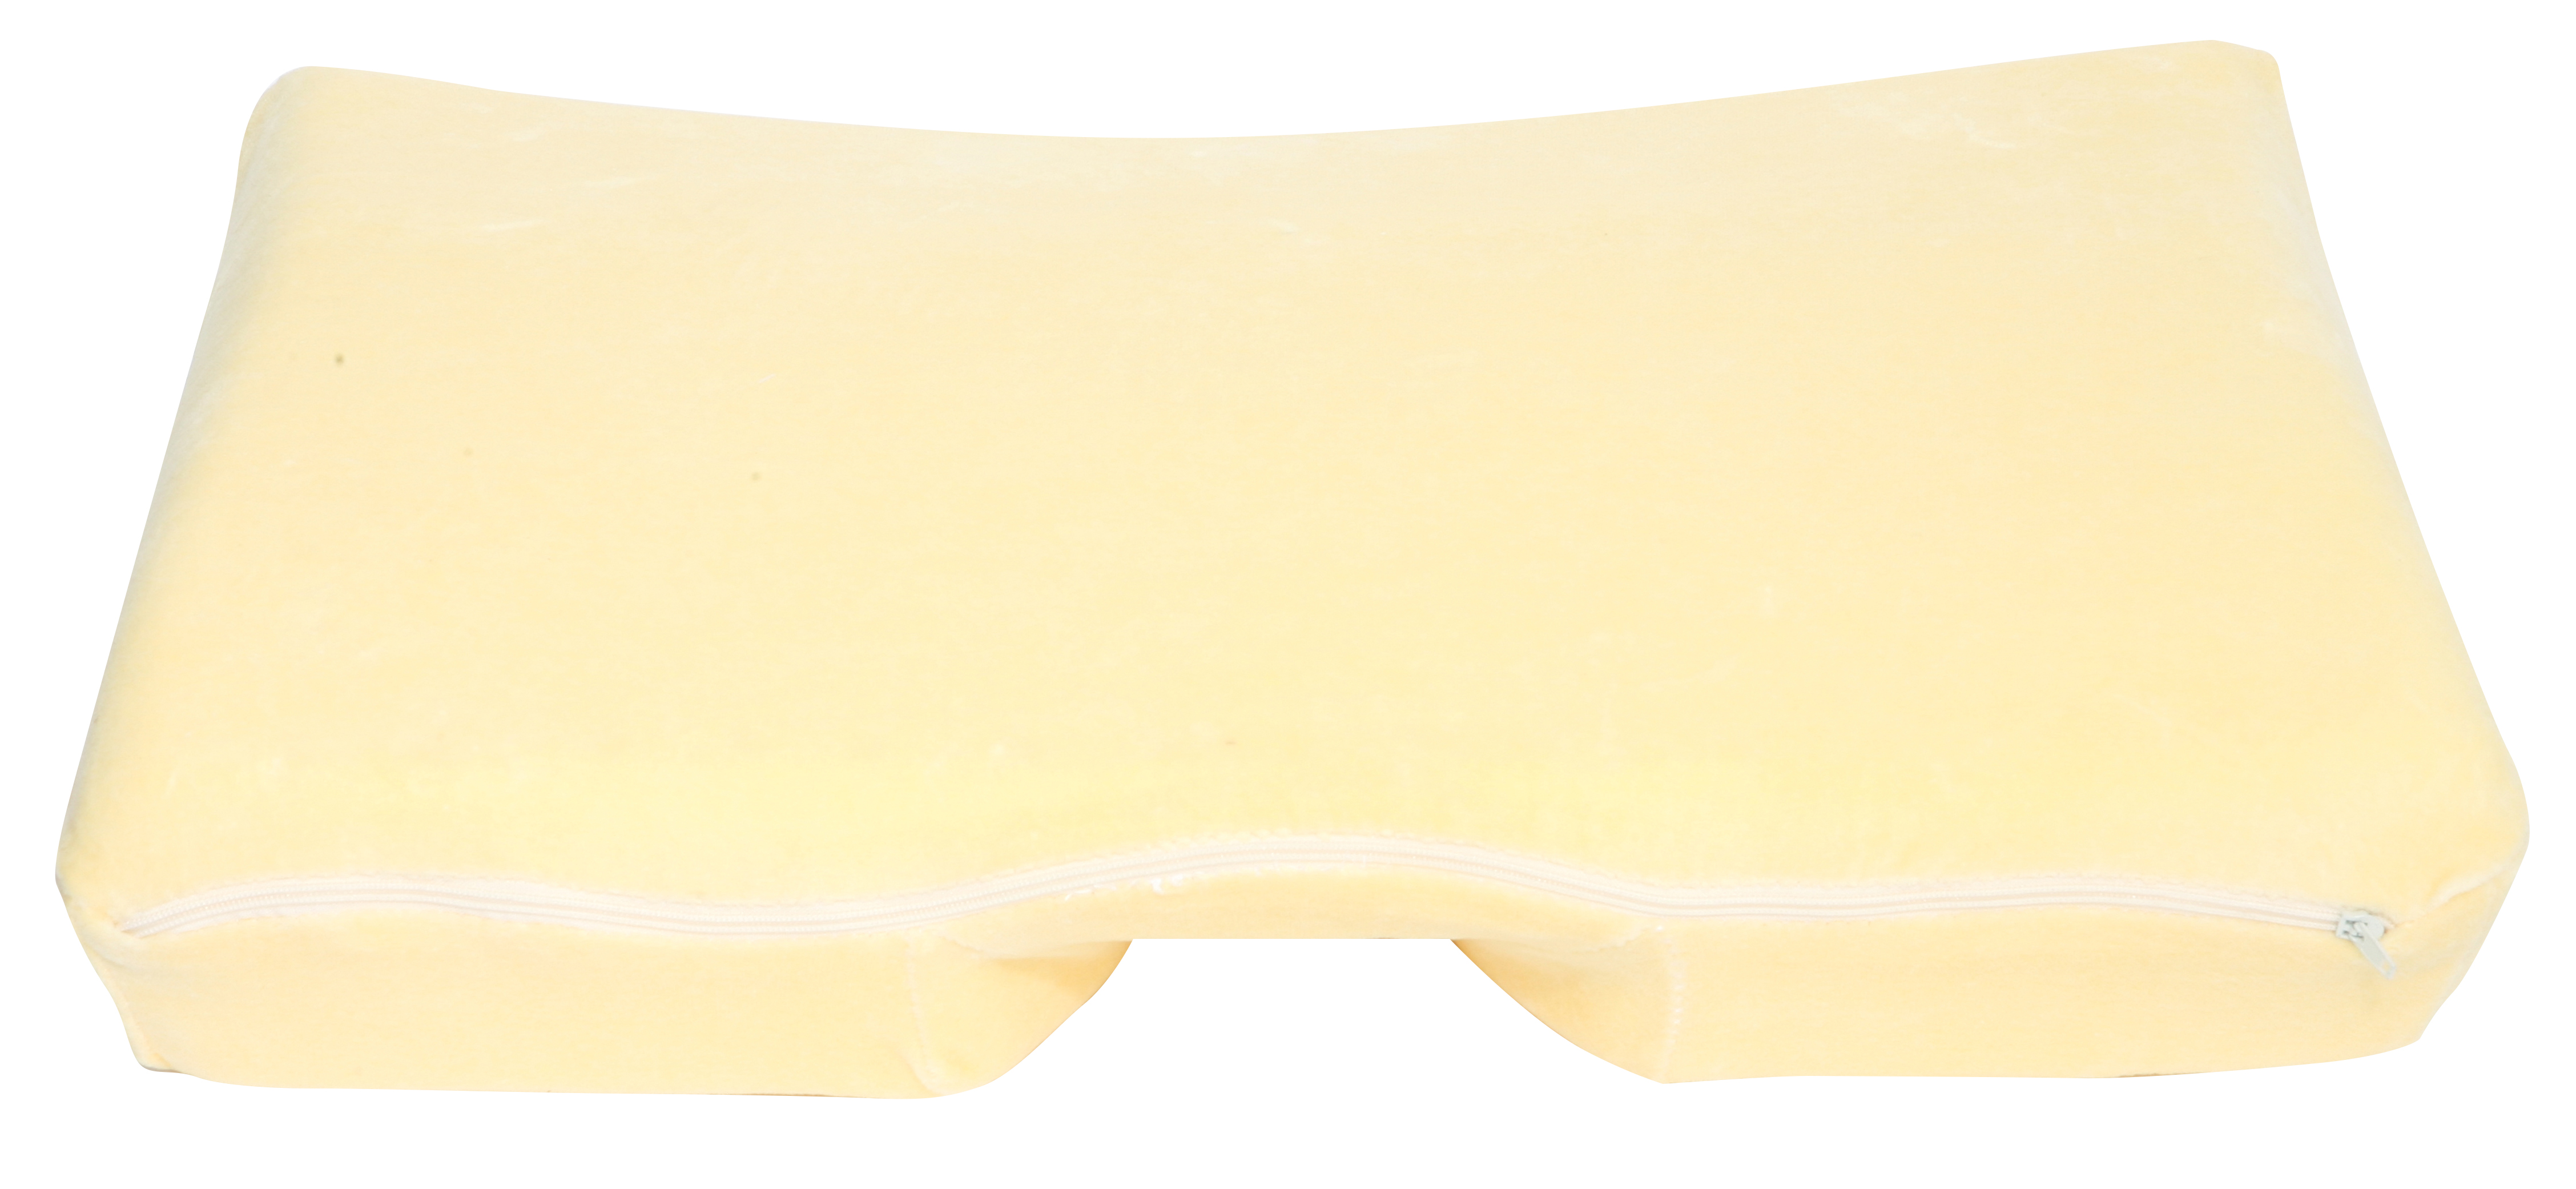 The Original Better Sleep Memory Foam Pillow 3.5 Inch Thick Foam Cream 